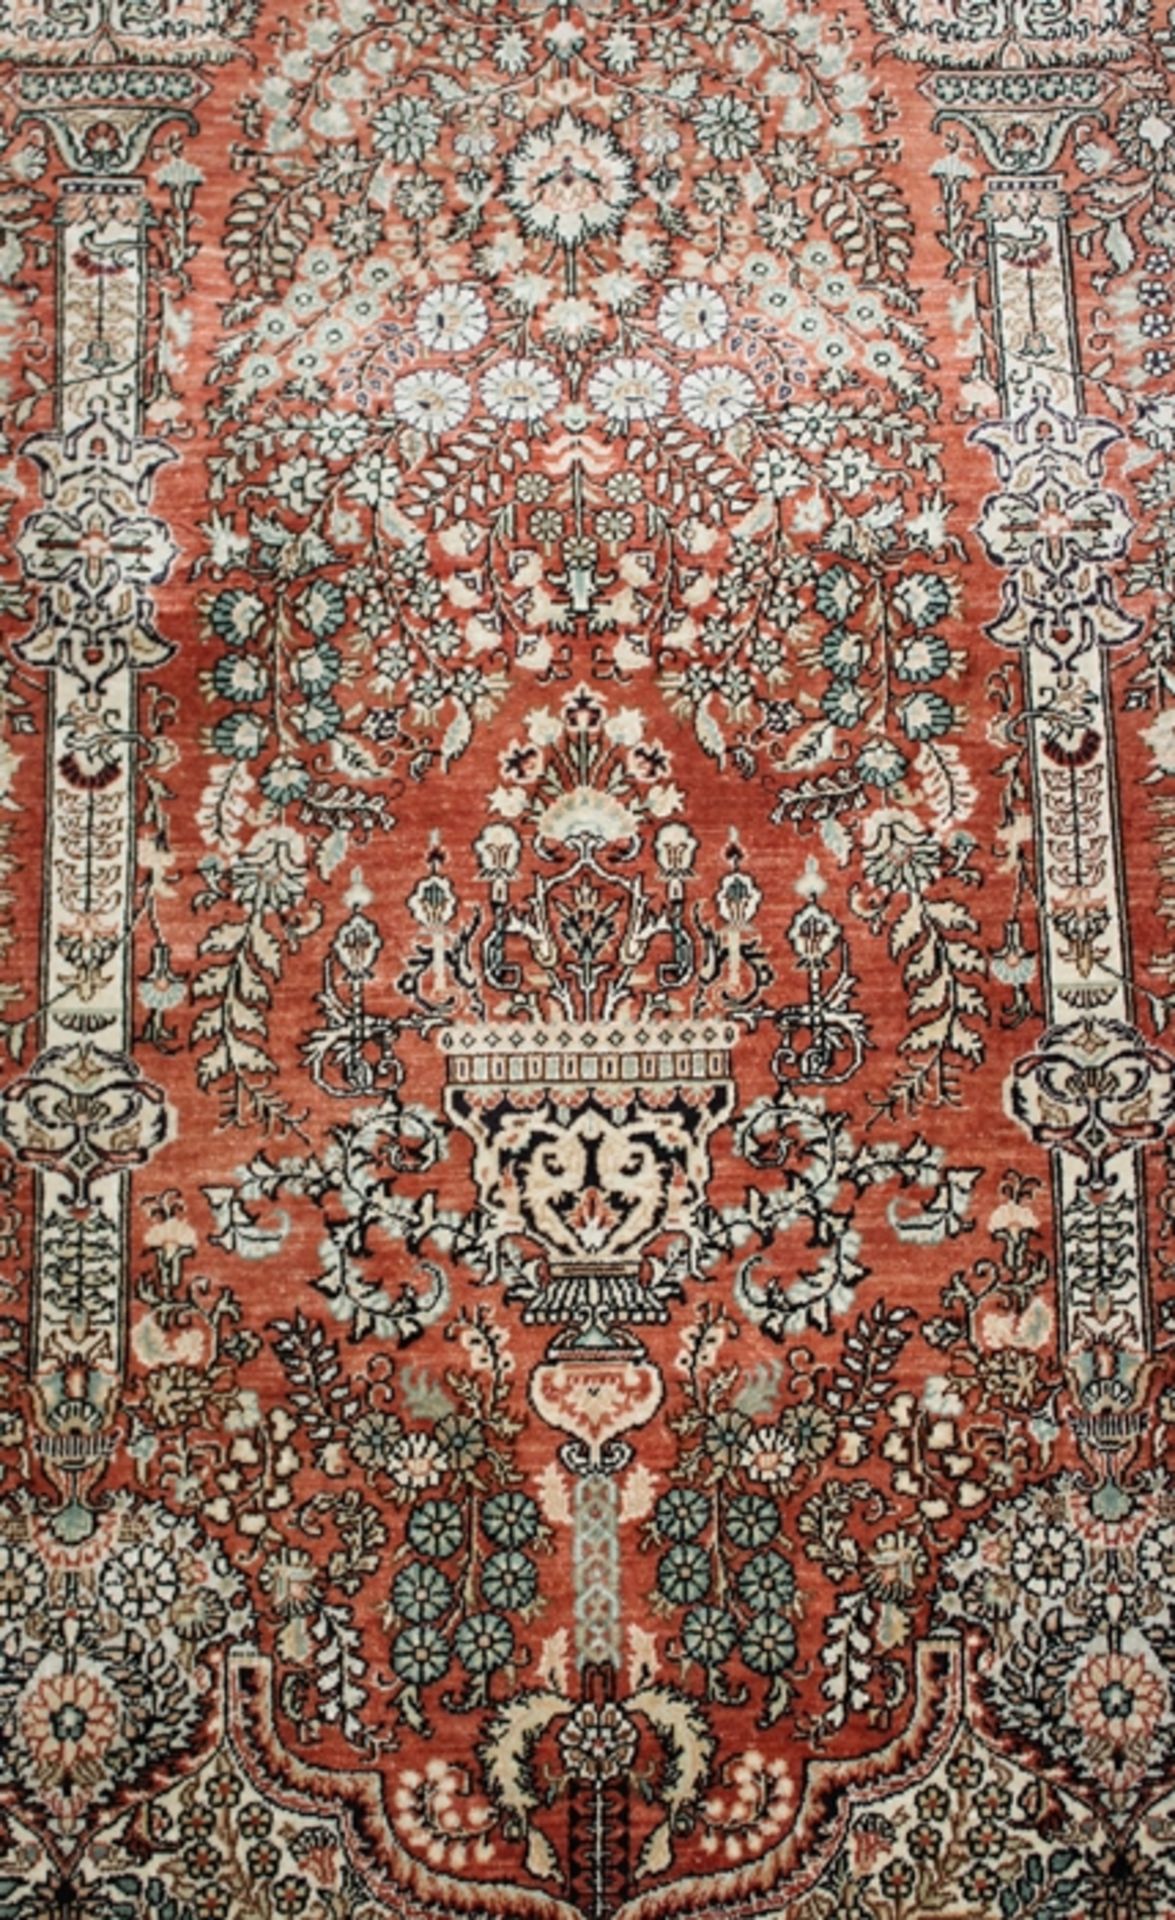 Orient-Seidenteppich, rotgrundig, guter Zustand, ca. 160 x 95cm. - Bild 2 aus 3